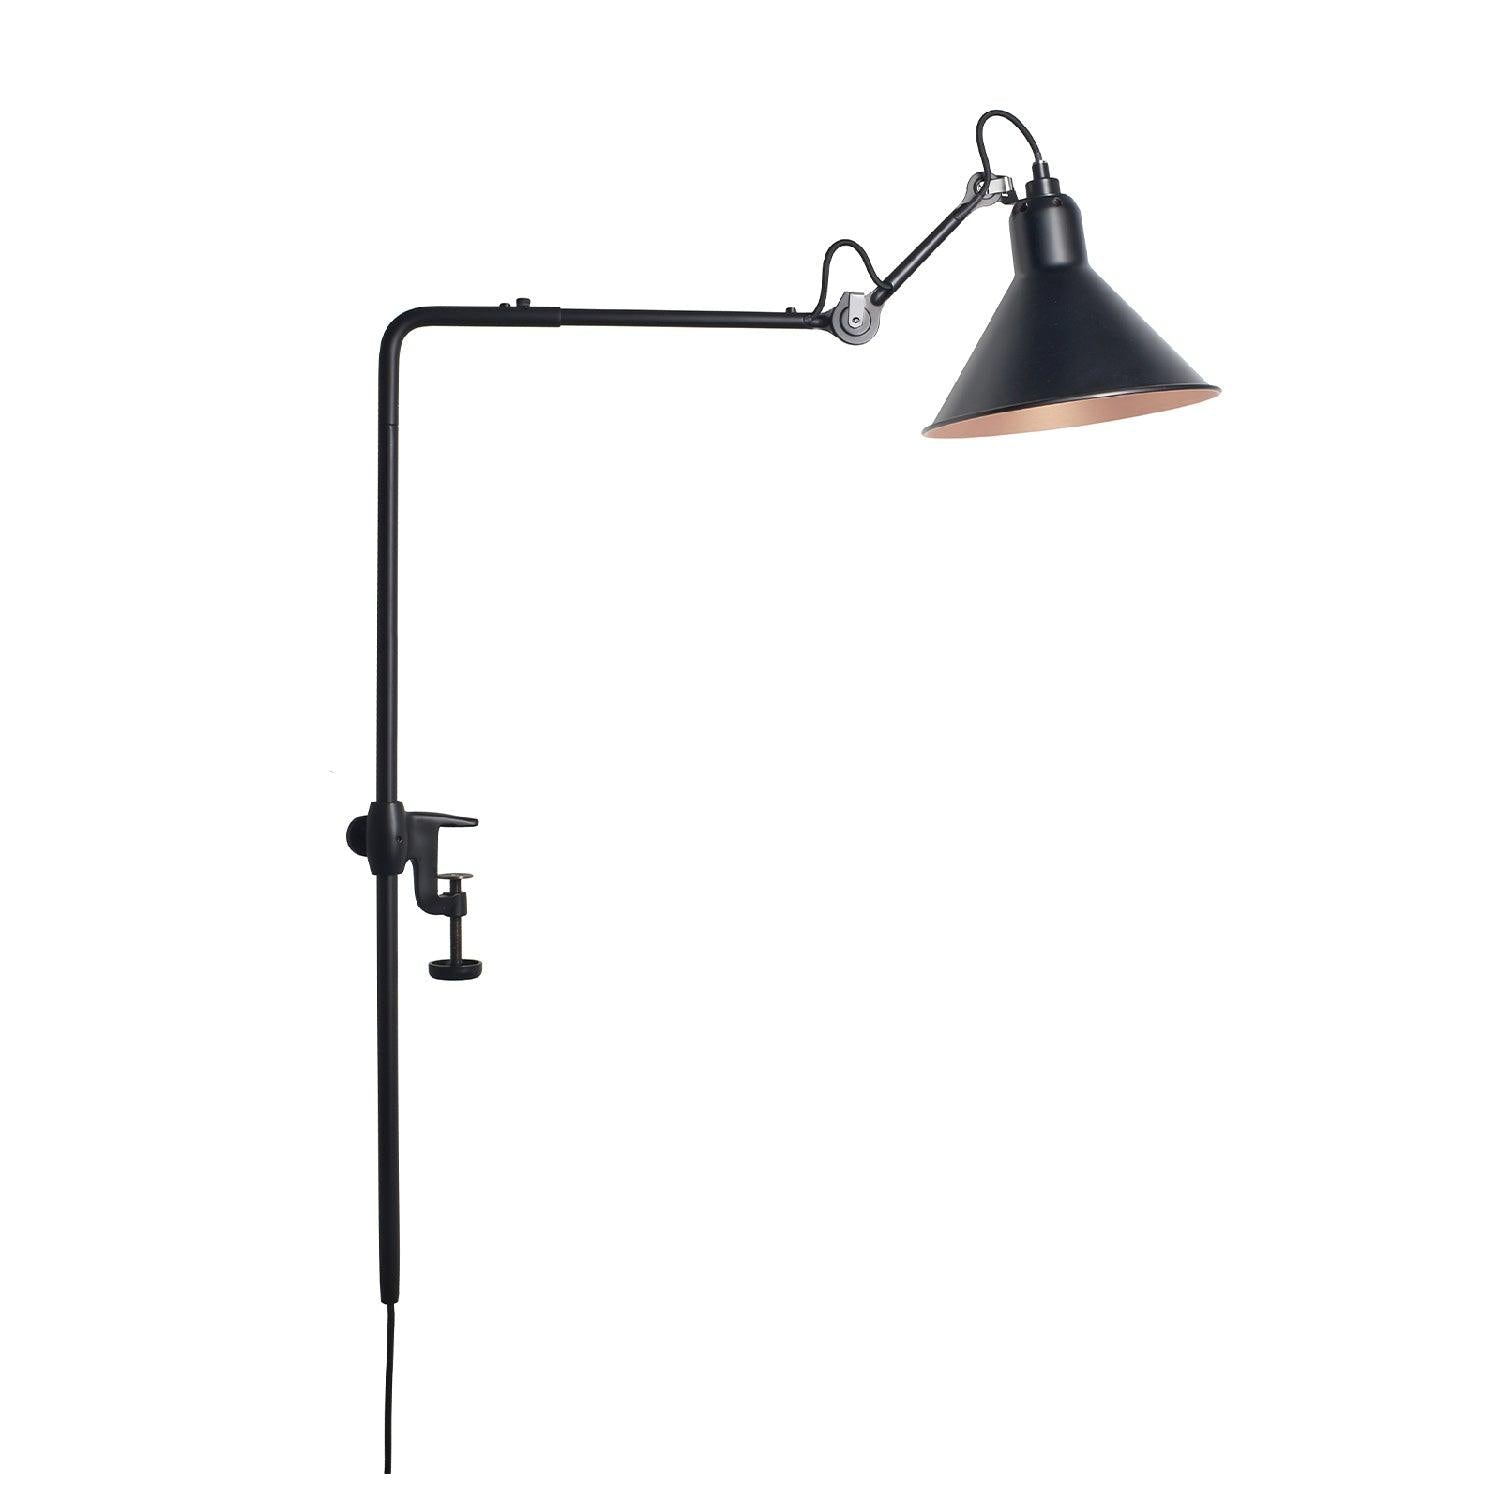 Image de : Lampe Gras N°226 - Conique présenté par 37+ Design.